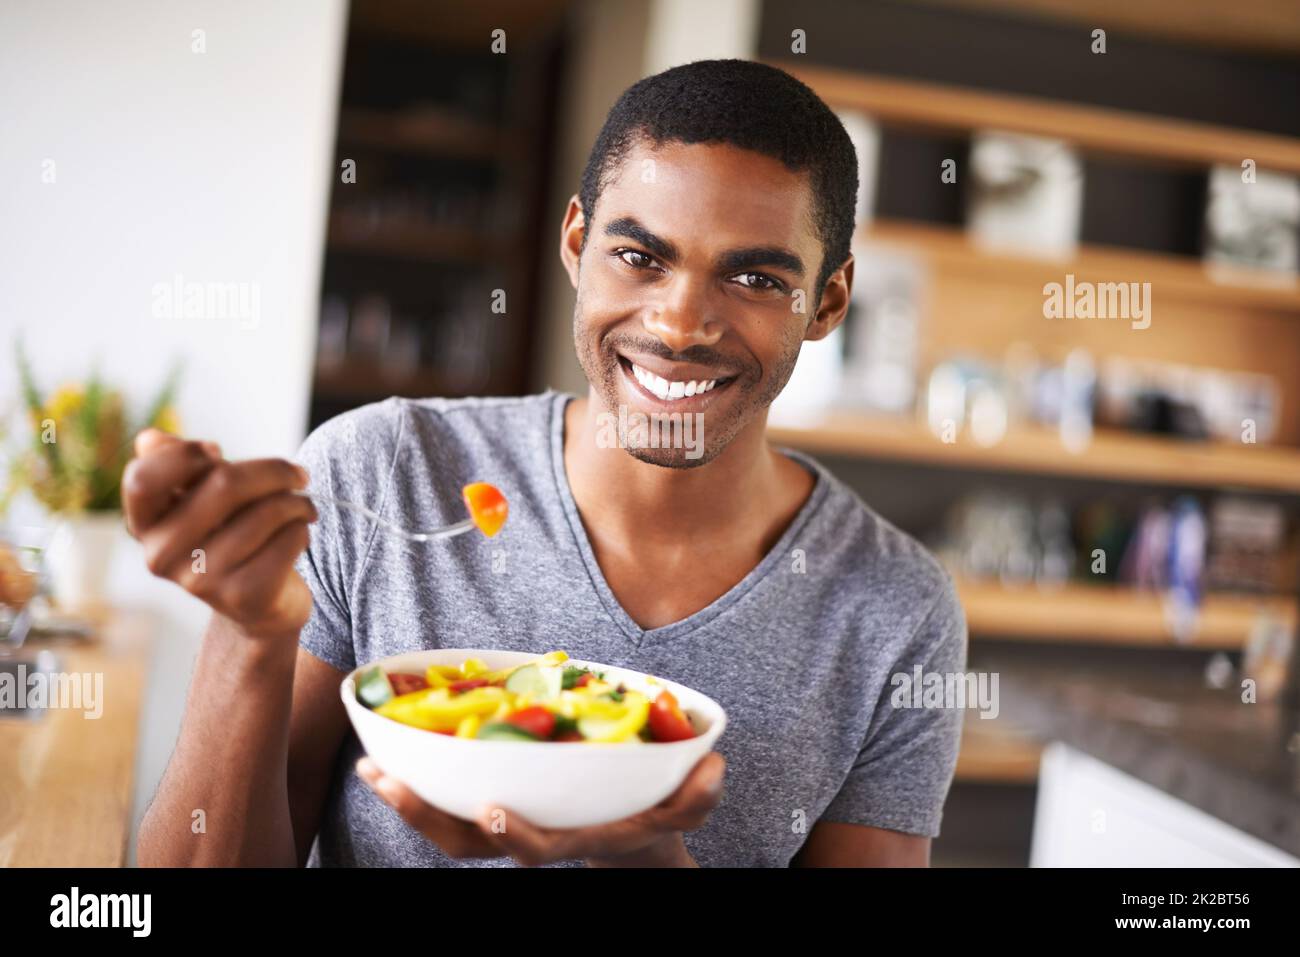 Haben Sie einen Bissen Gesundheit. Innenaufnahme eines wunderschönen jungen schwarzen Mannes, der seinen Obstsalat vorführt. Stockfoto